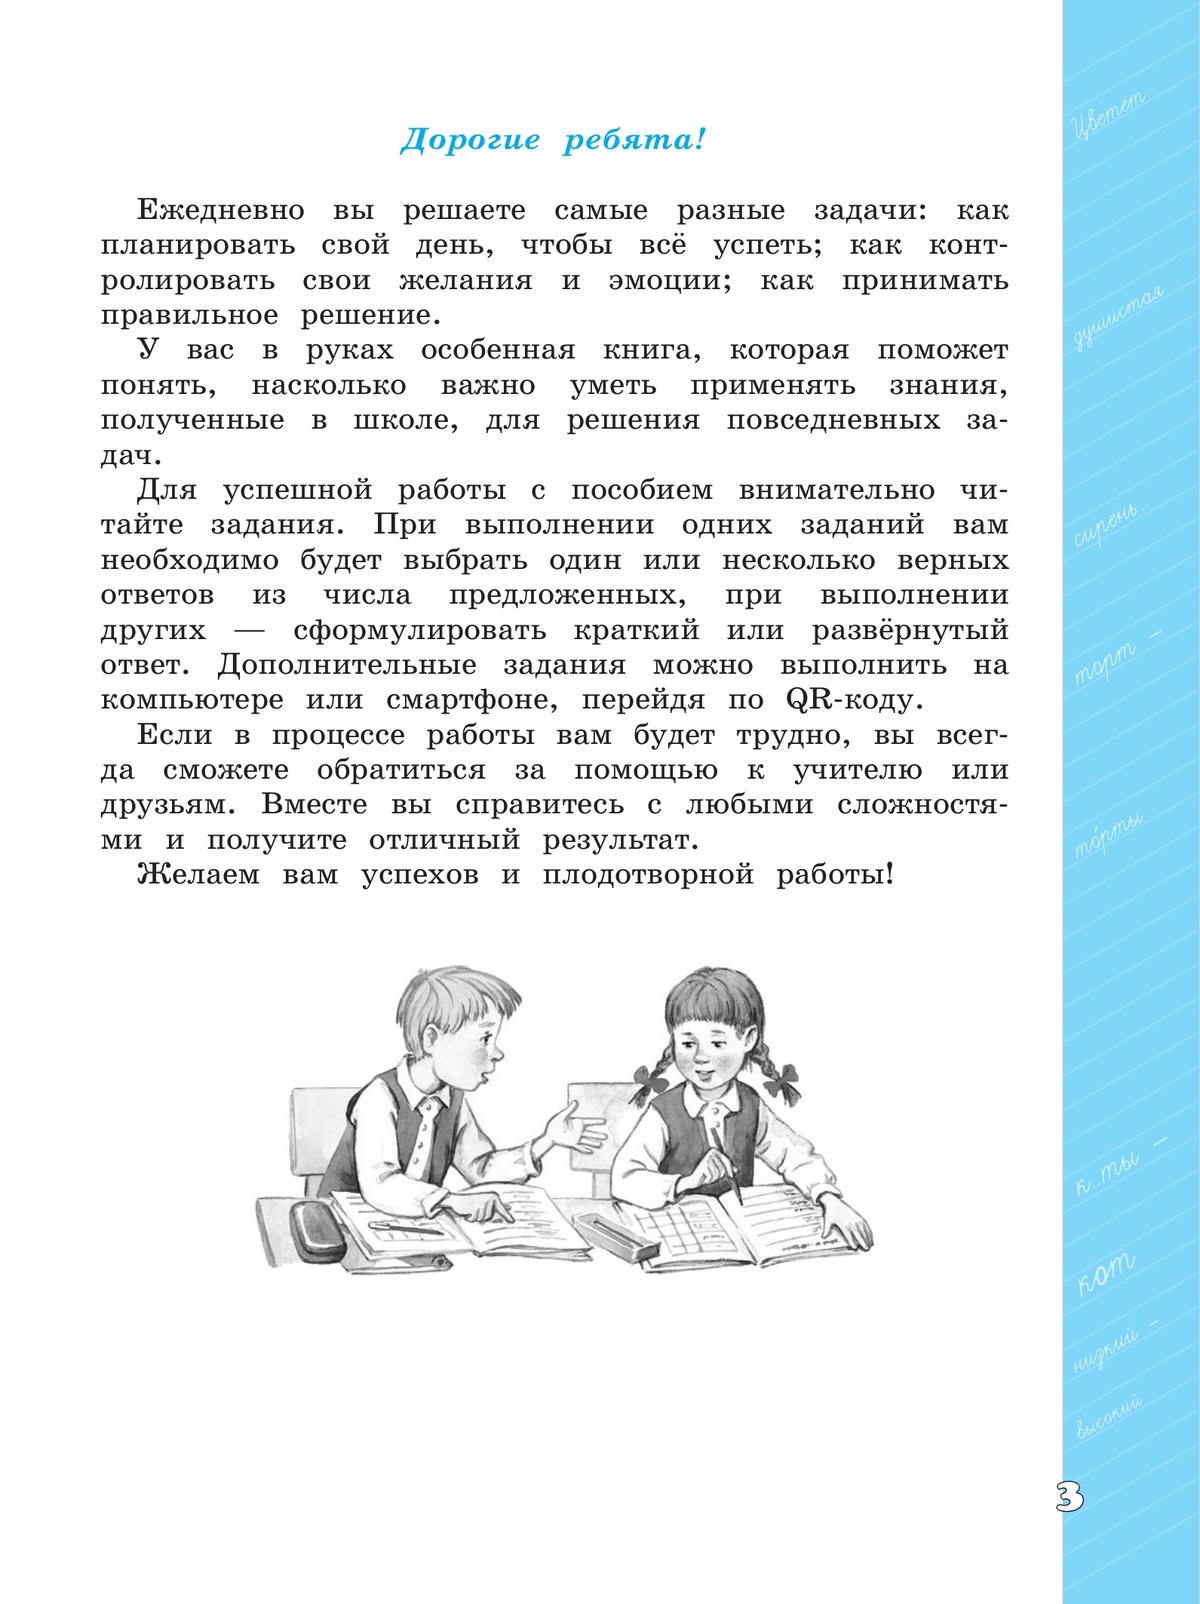 Языковая грамотность. Русский язык. Развитие. Диагностика. 4 класс 8